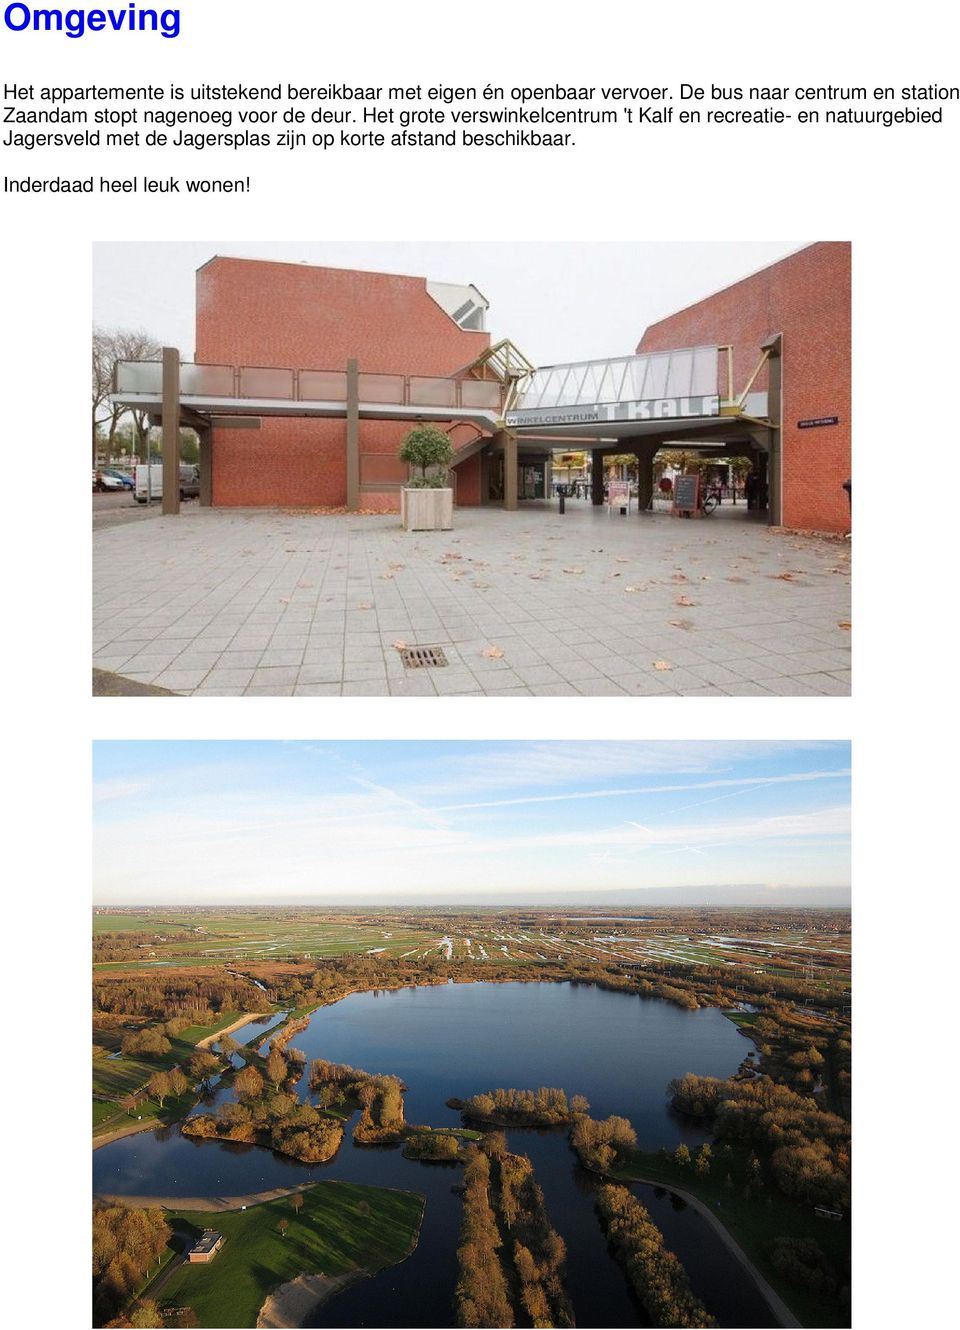 Het grote verswinkelcentrum 't Kalf en recreatie- en natuurgebied Jagersveld